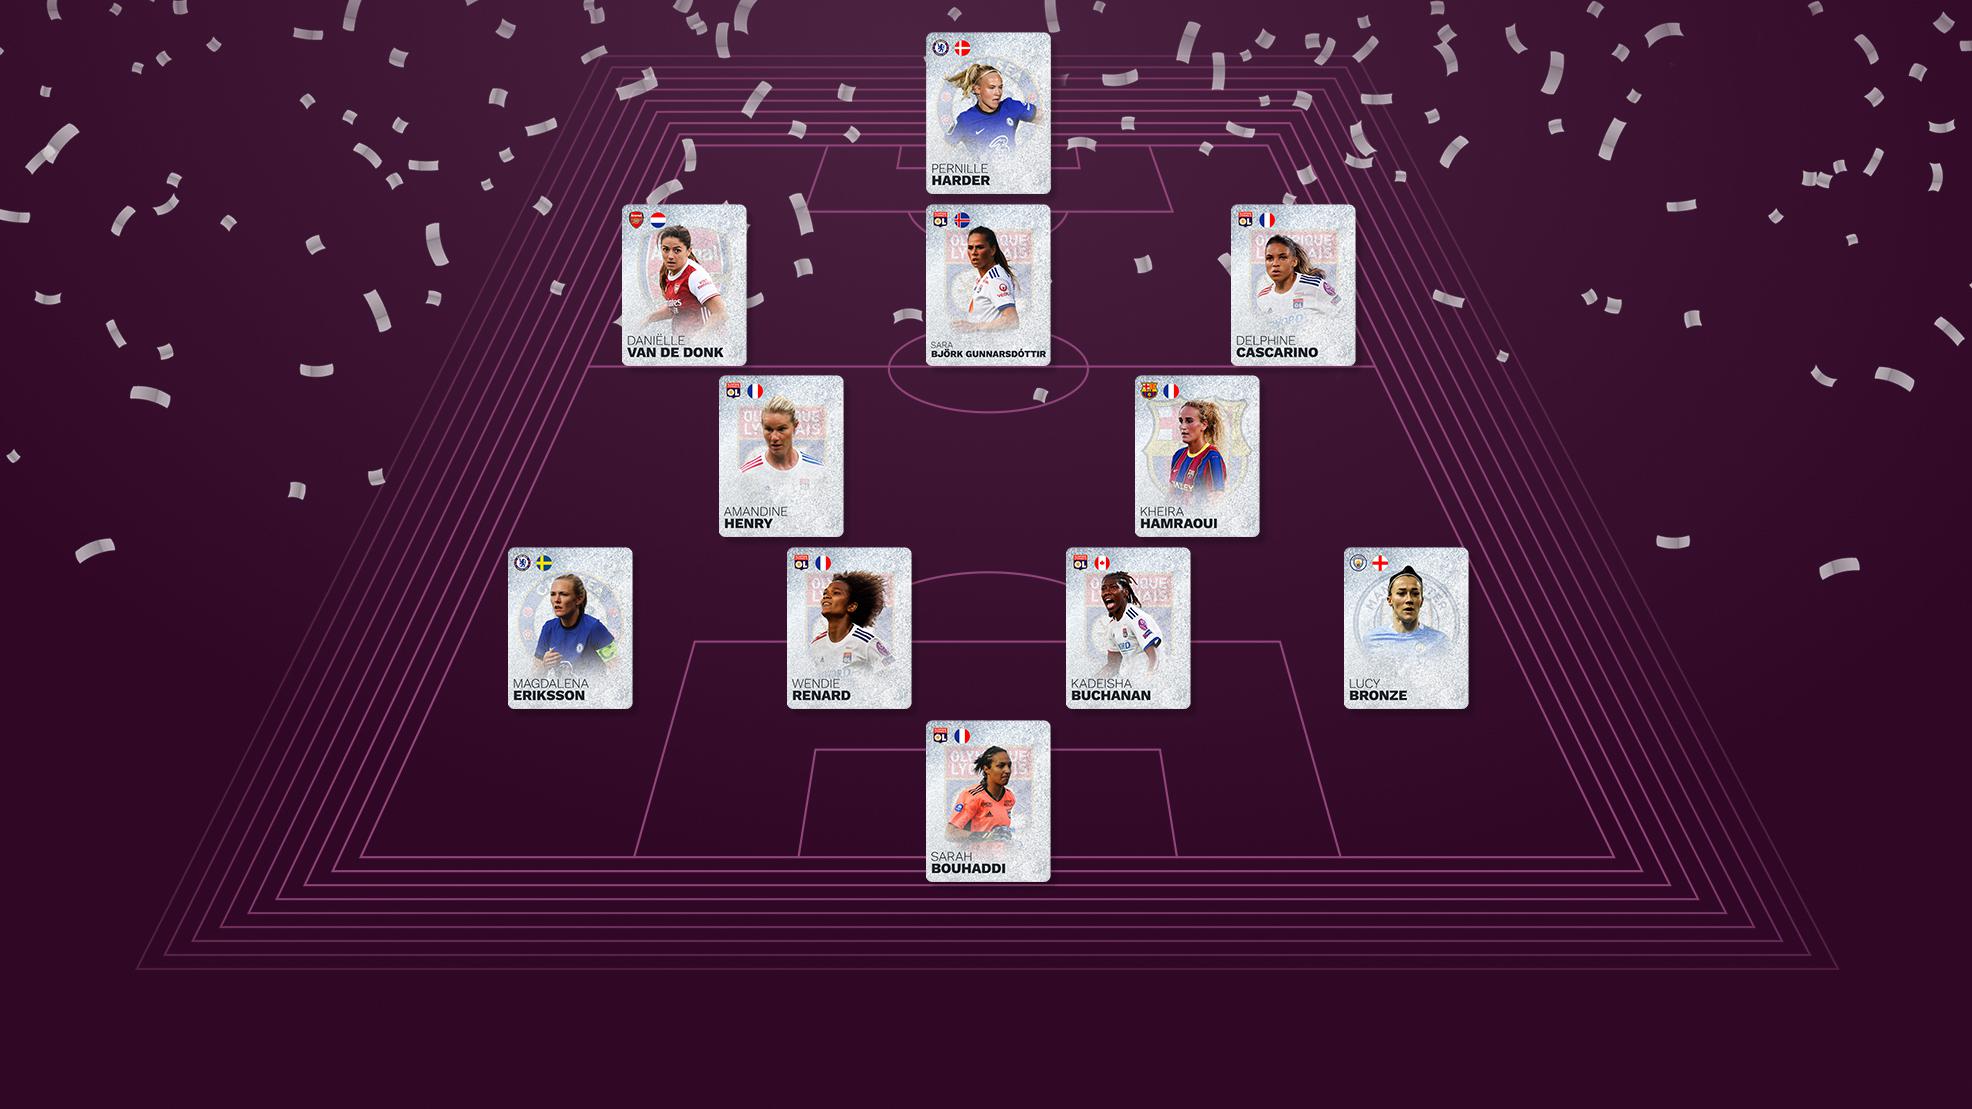 Équipe féminine des internautes d'UEFA.com 2020, les stats